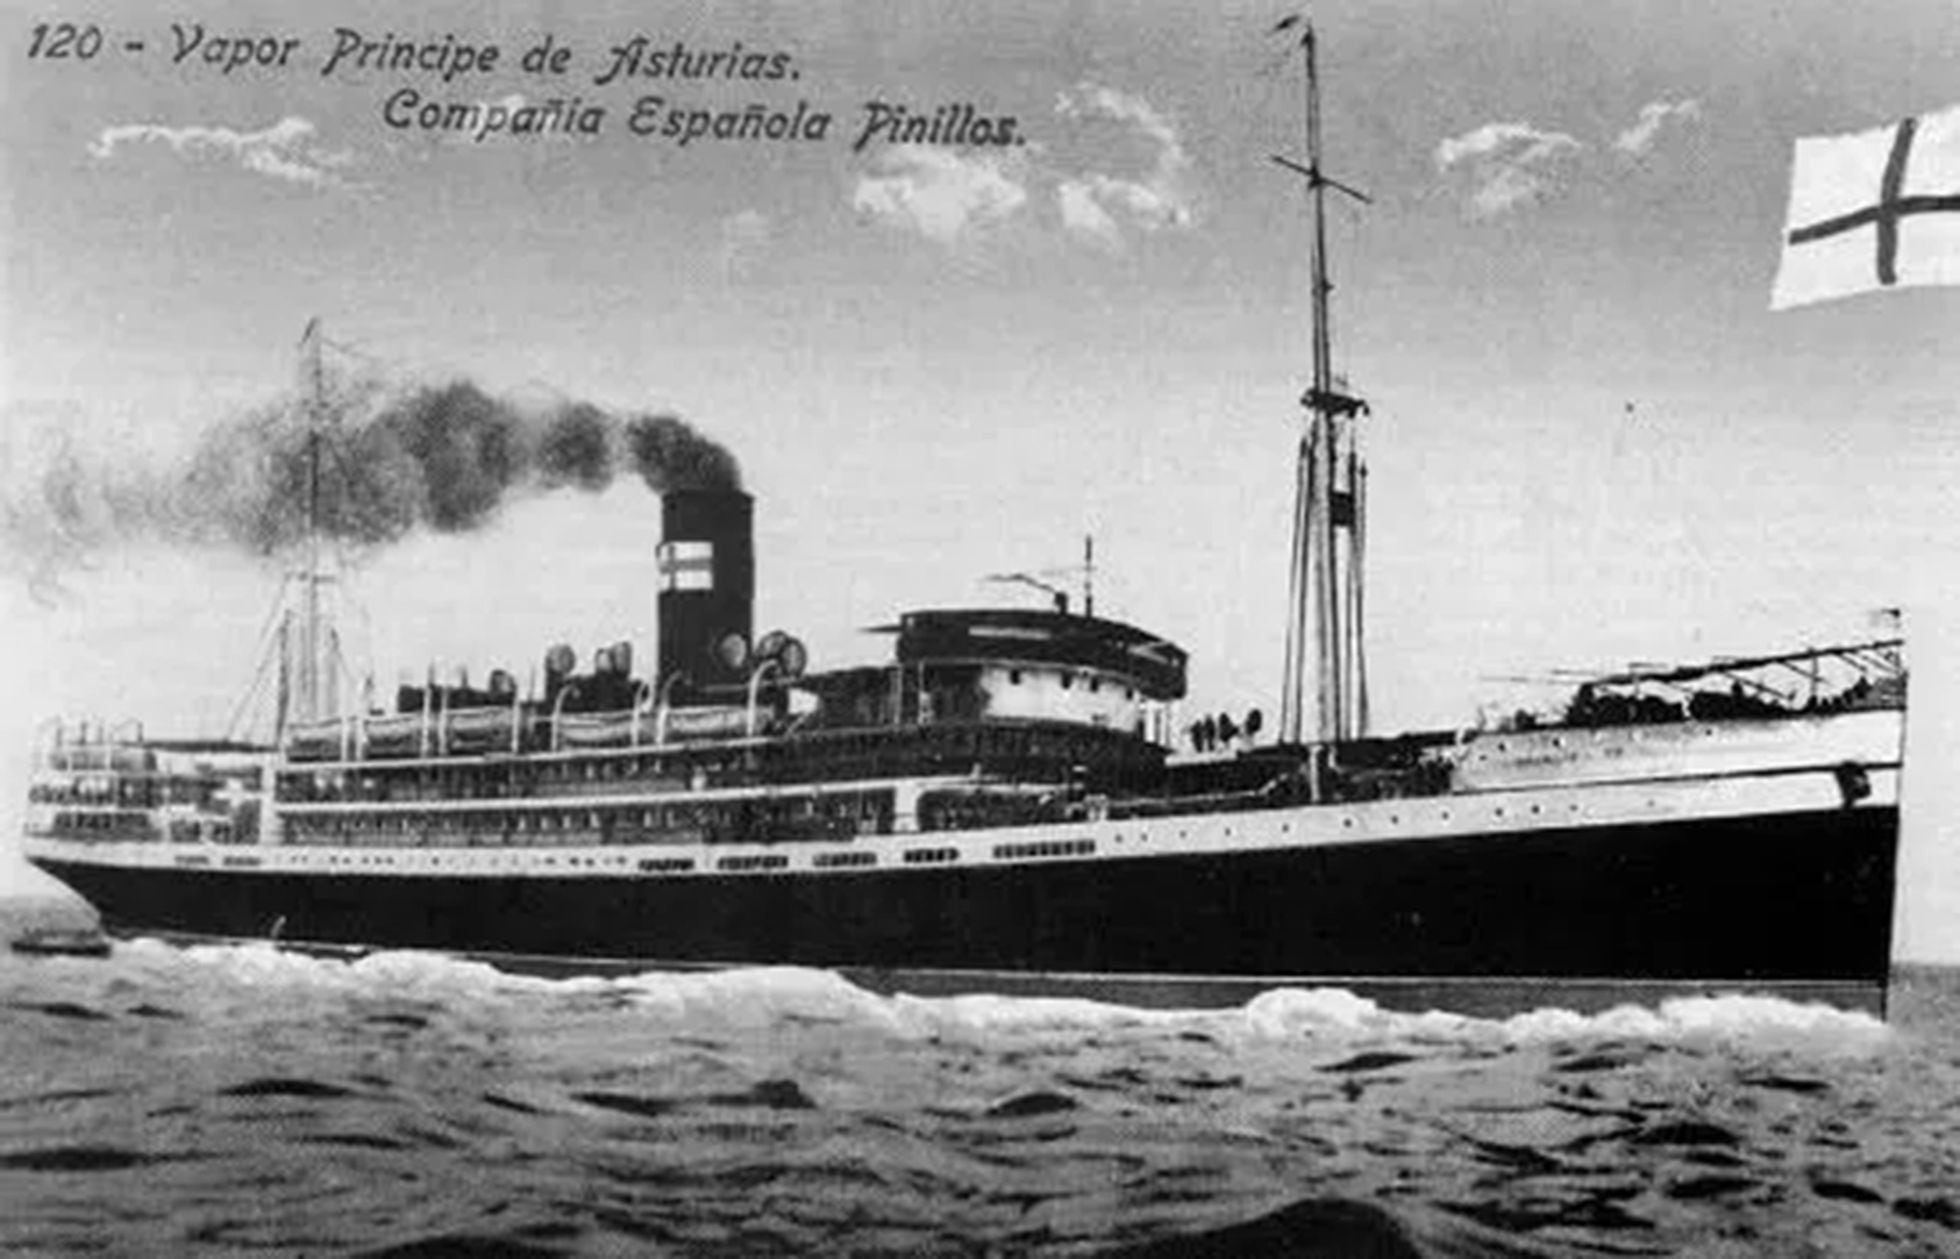 RMS Principe de Asturias